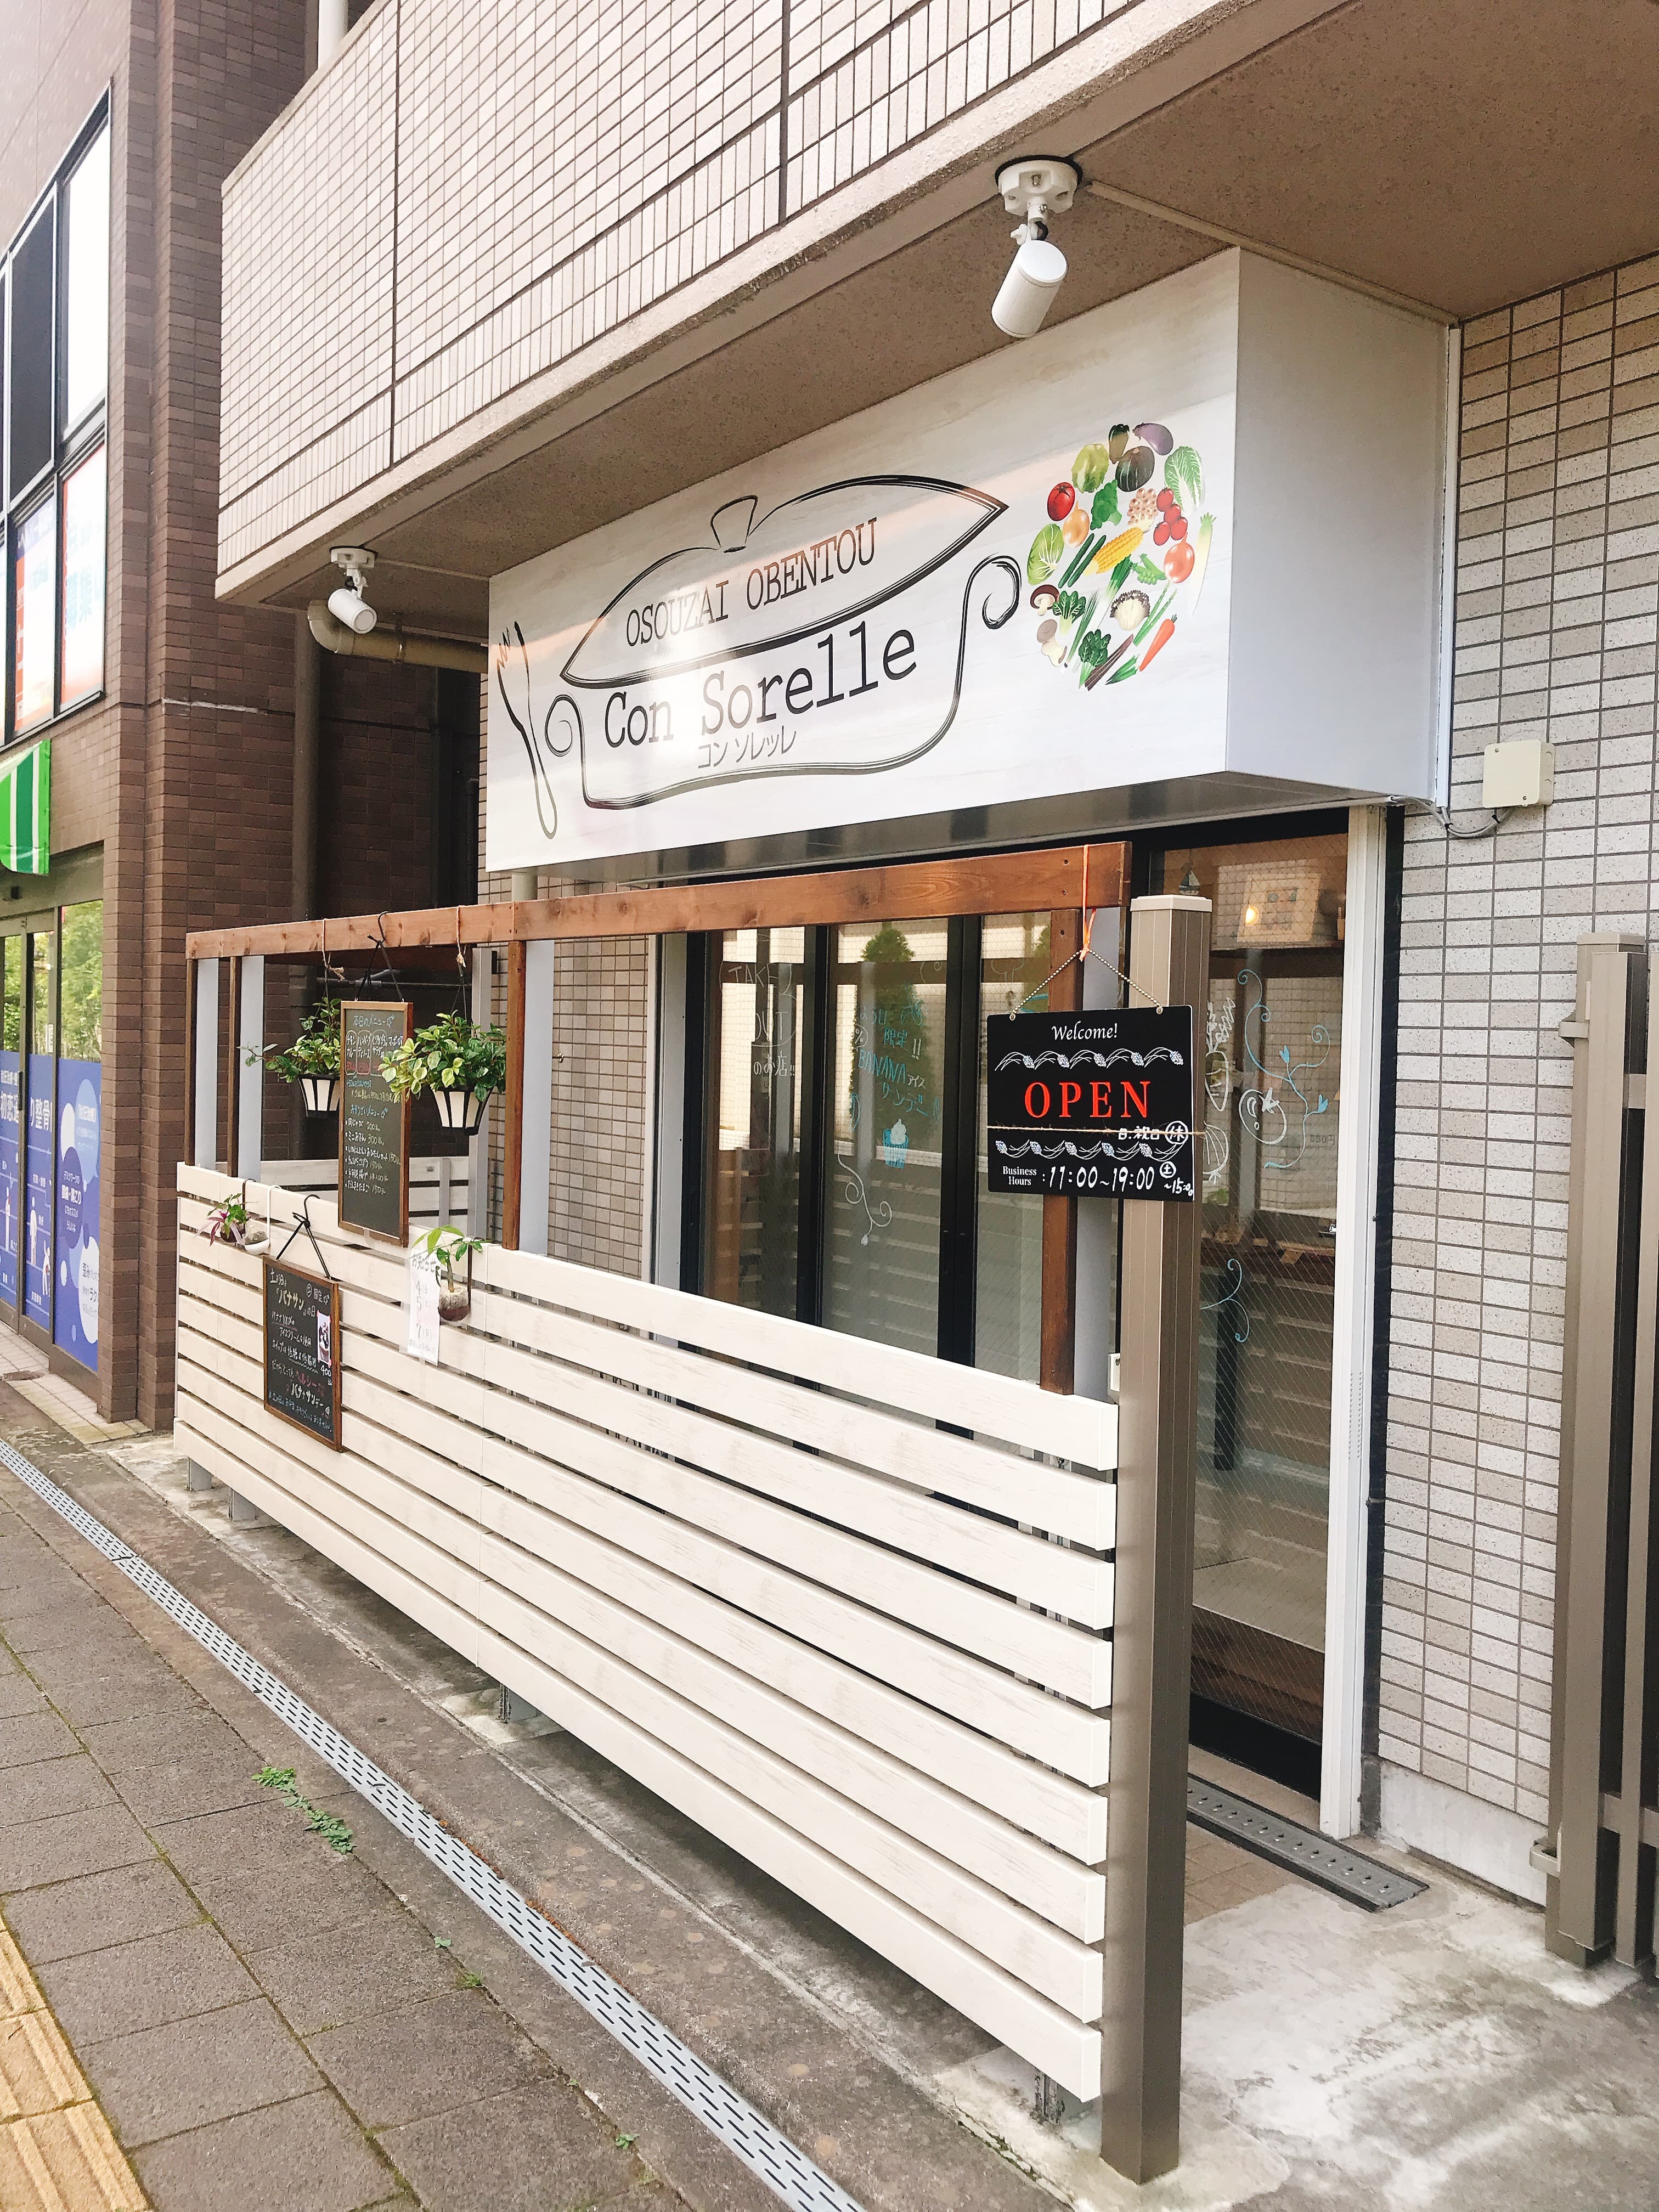 仙台駅東口にある、お母さんの味がするお総菜屋「コン ソレッレ」に行ってみた！心がほっこりする♫